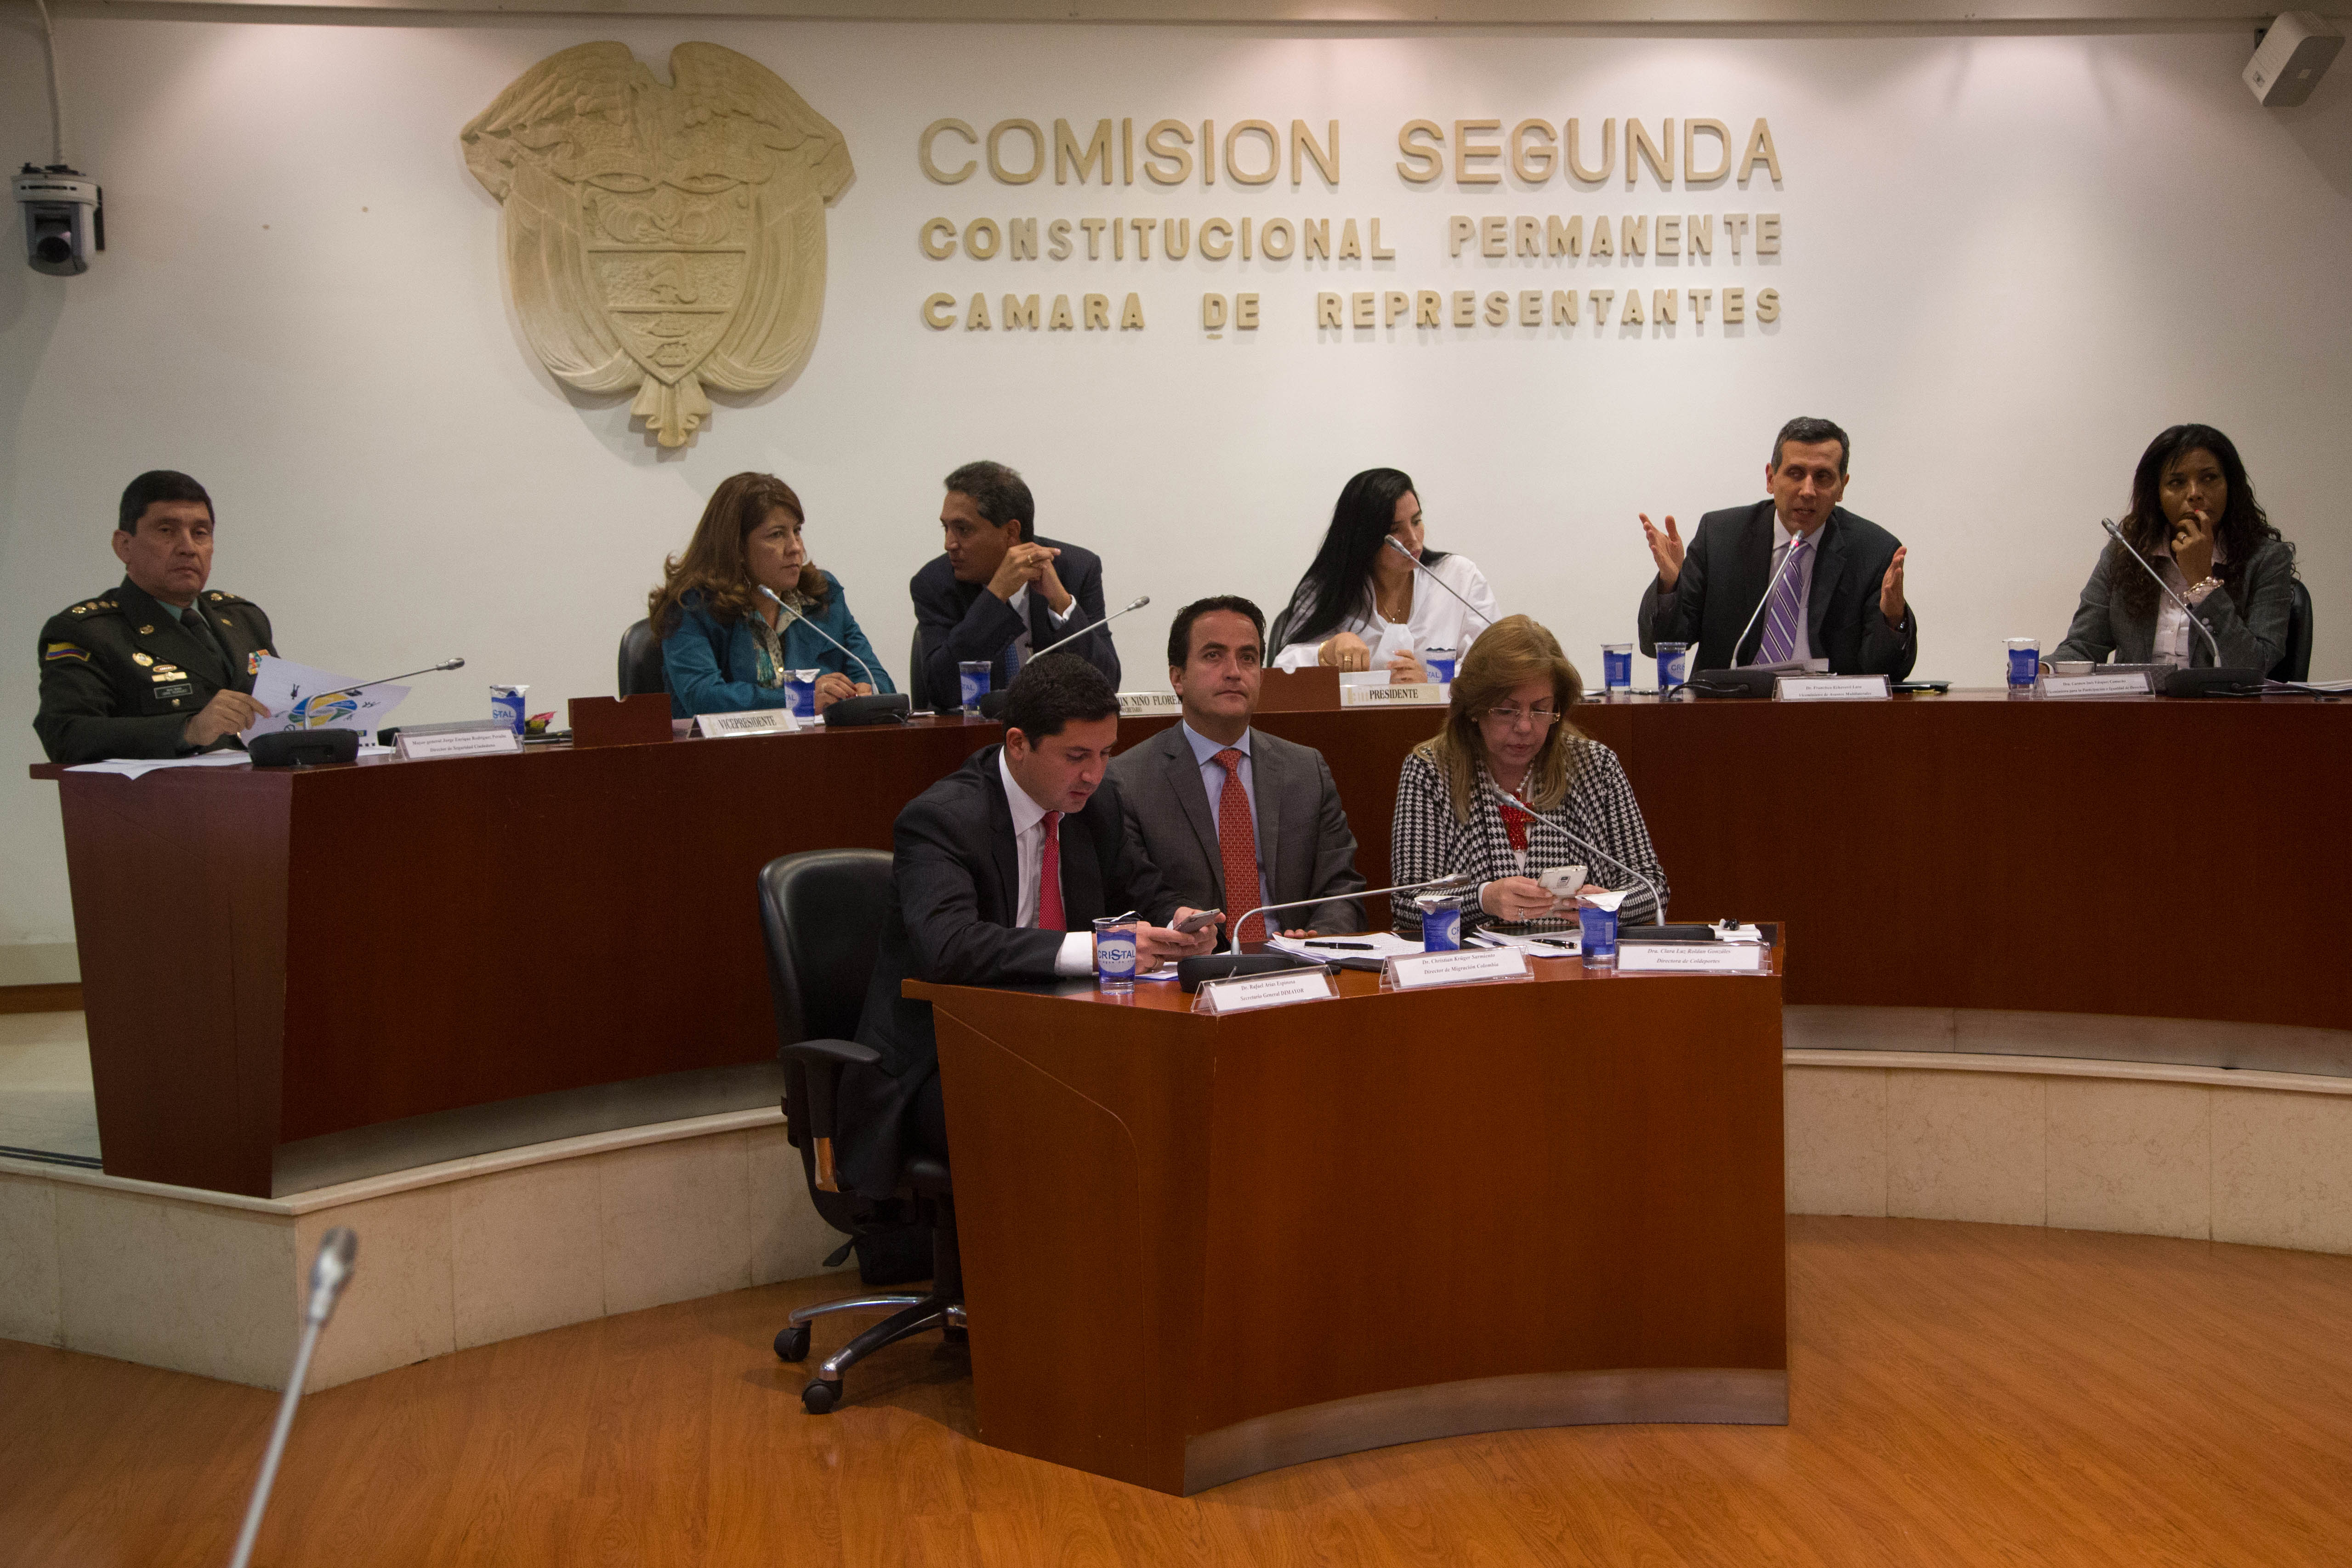 Viceministro Echeverri participó en el debate de control político citado en la Comisión Segunda donde analizaron los desmanes de hinchas colombianos que viajan a partidos de fútbol en el exterior